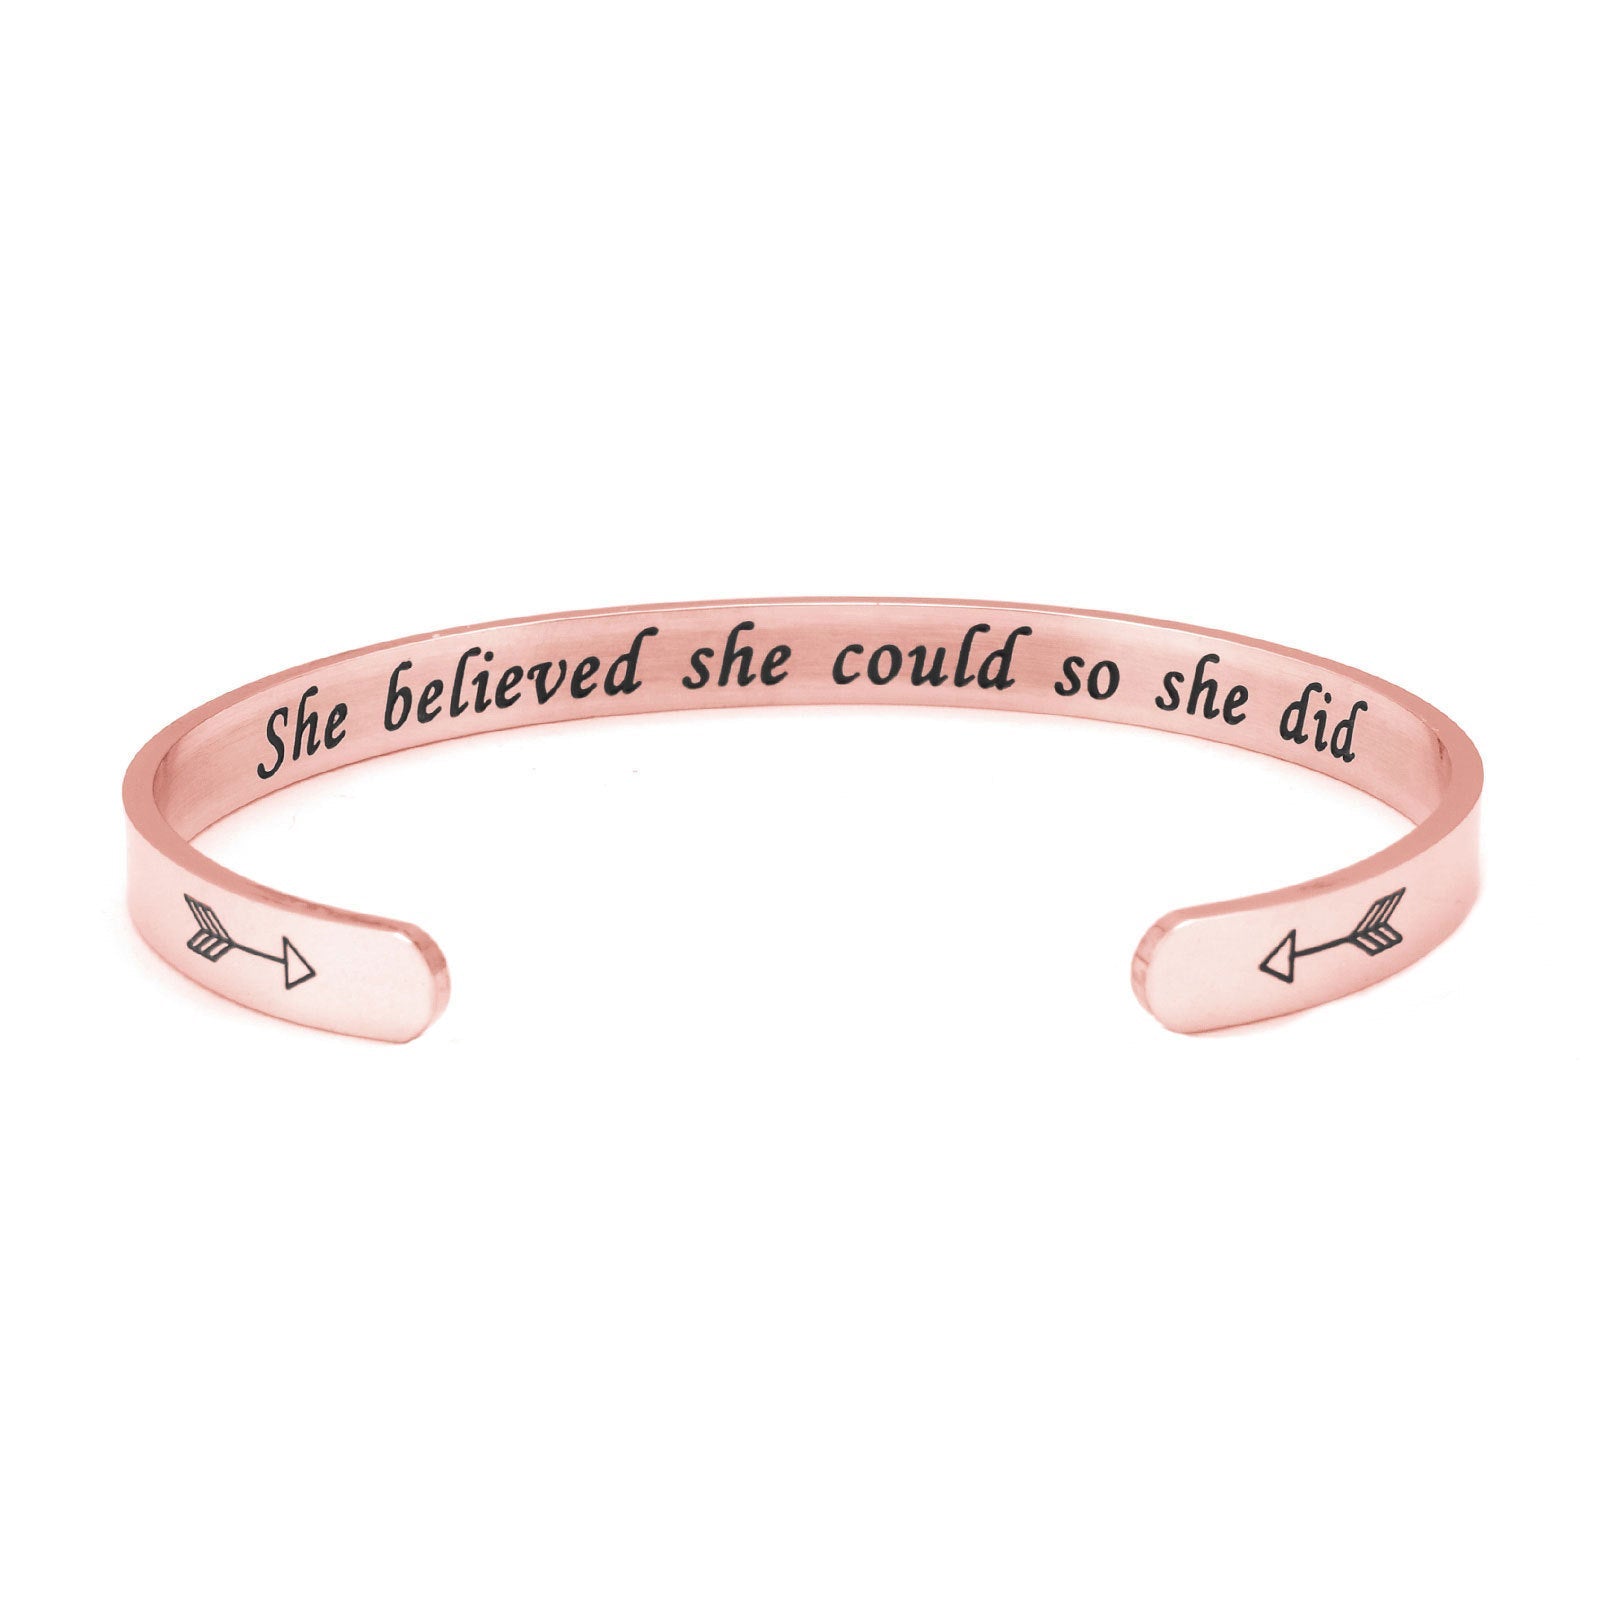 She Believed She Could Cuff Bracelet bracelets GrindStyle Rose Gold 